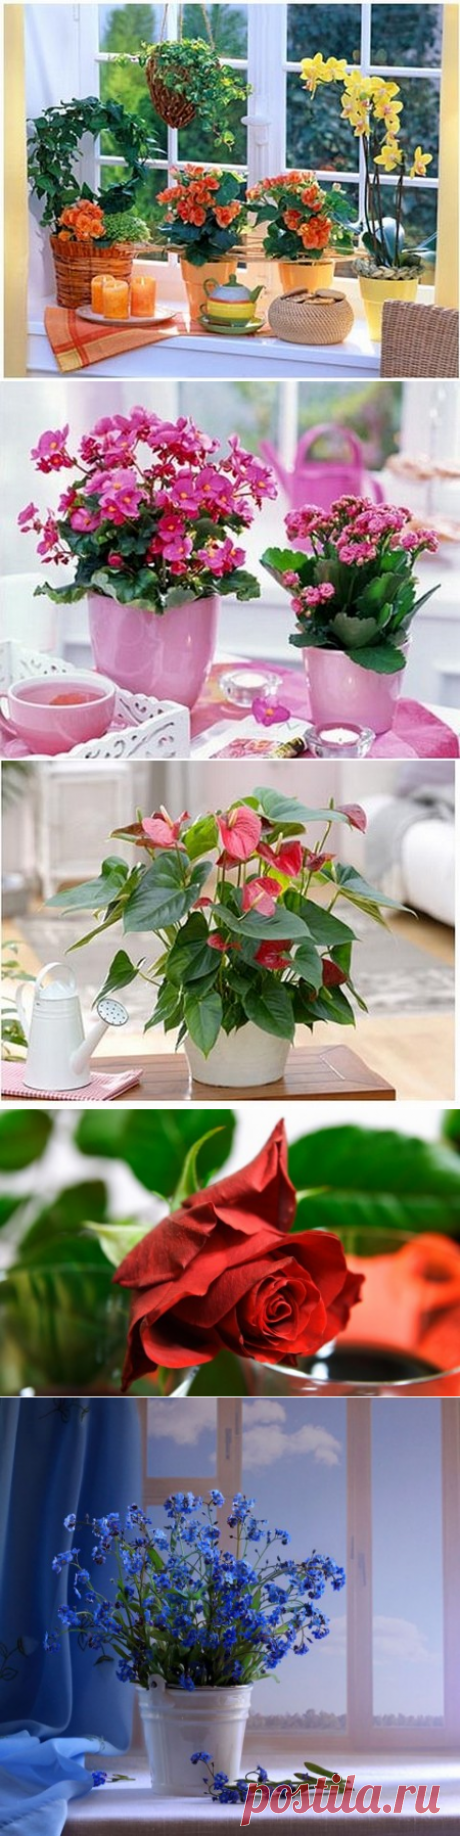 Как добиться цветения домашних растений